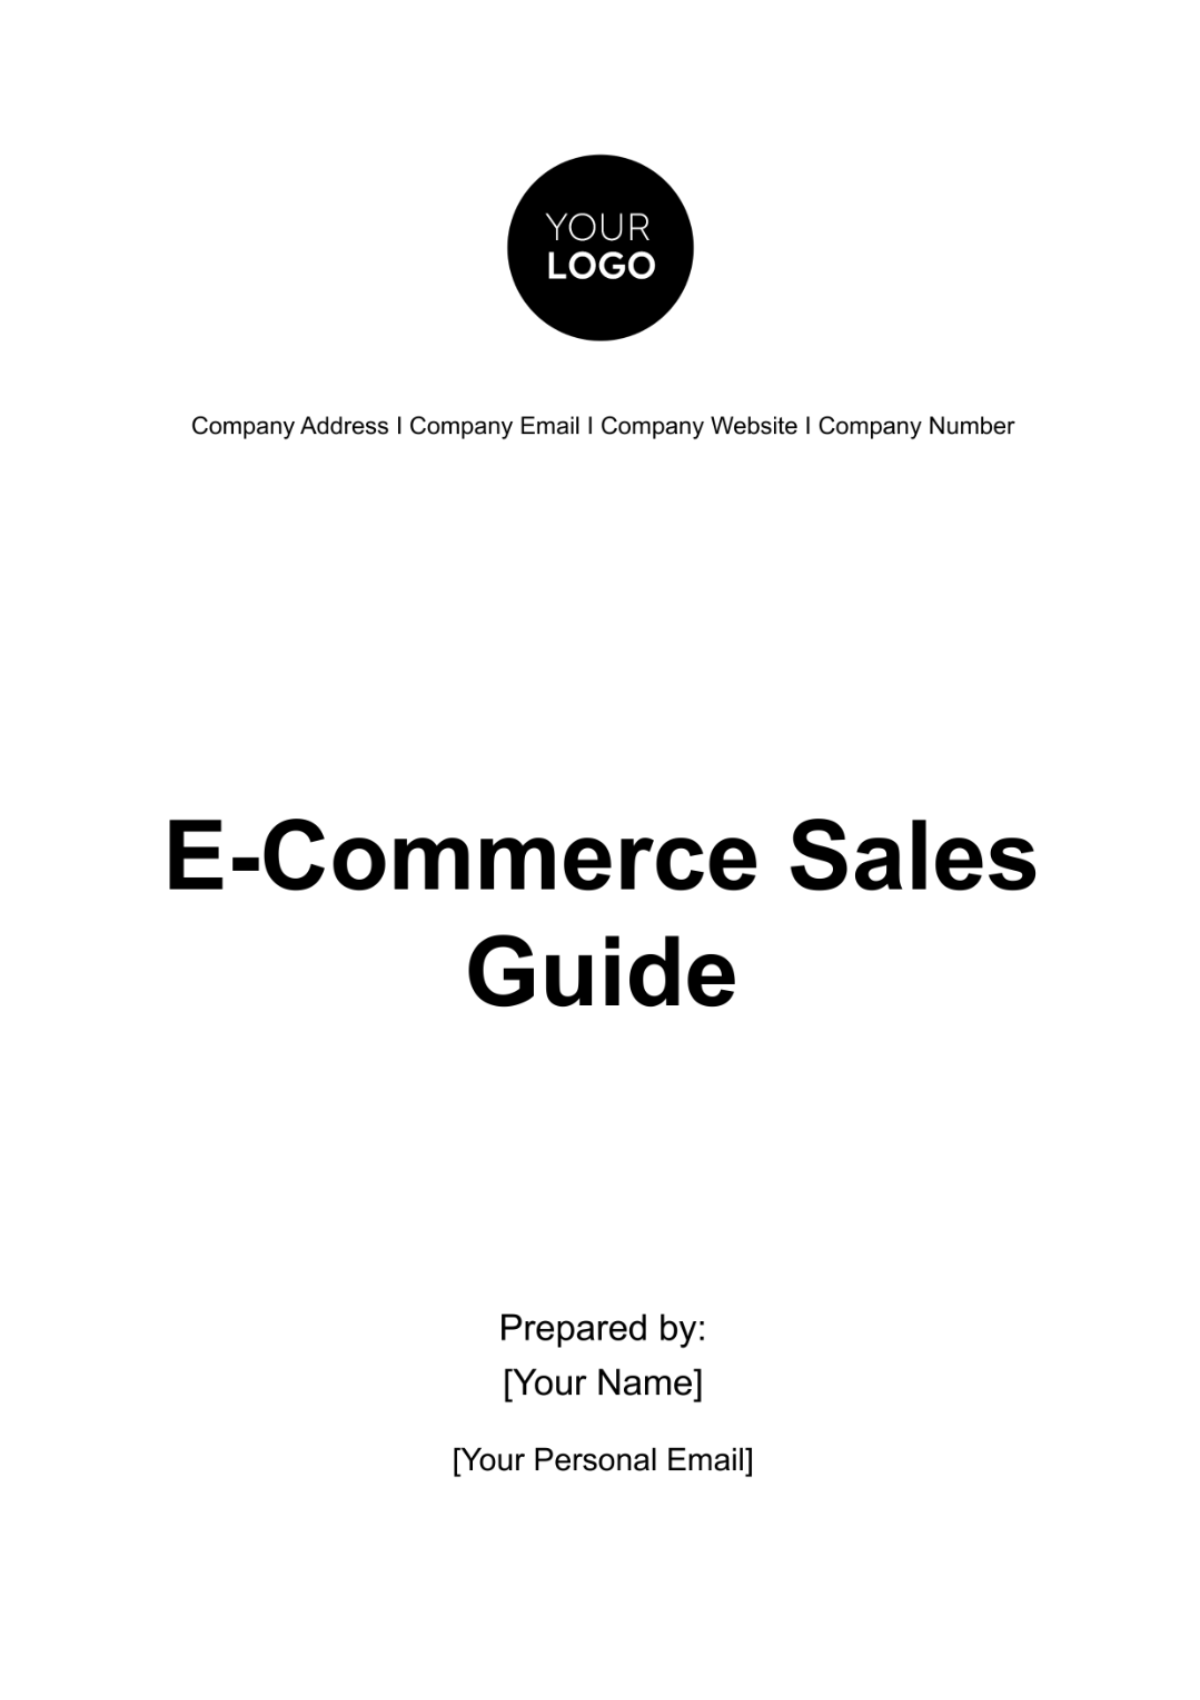 E-Commerce Sales Guide Template